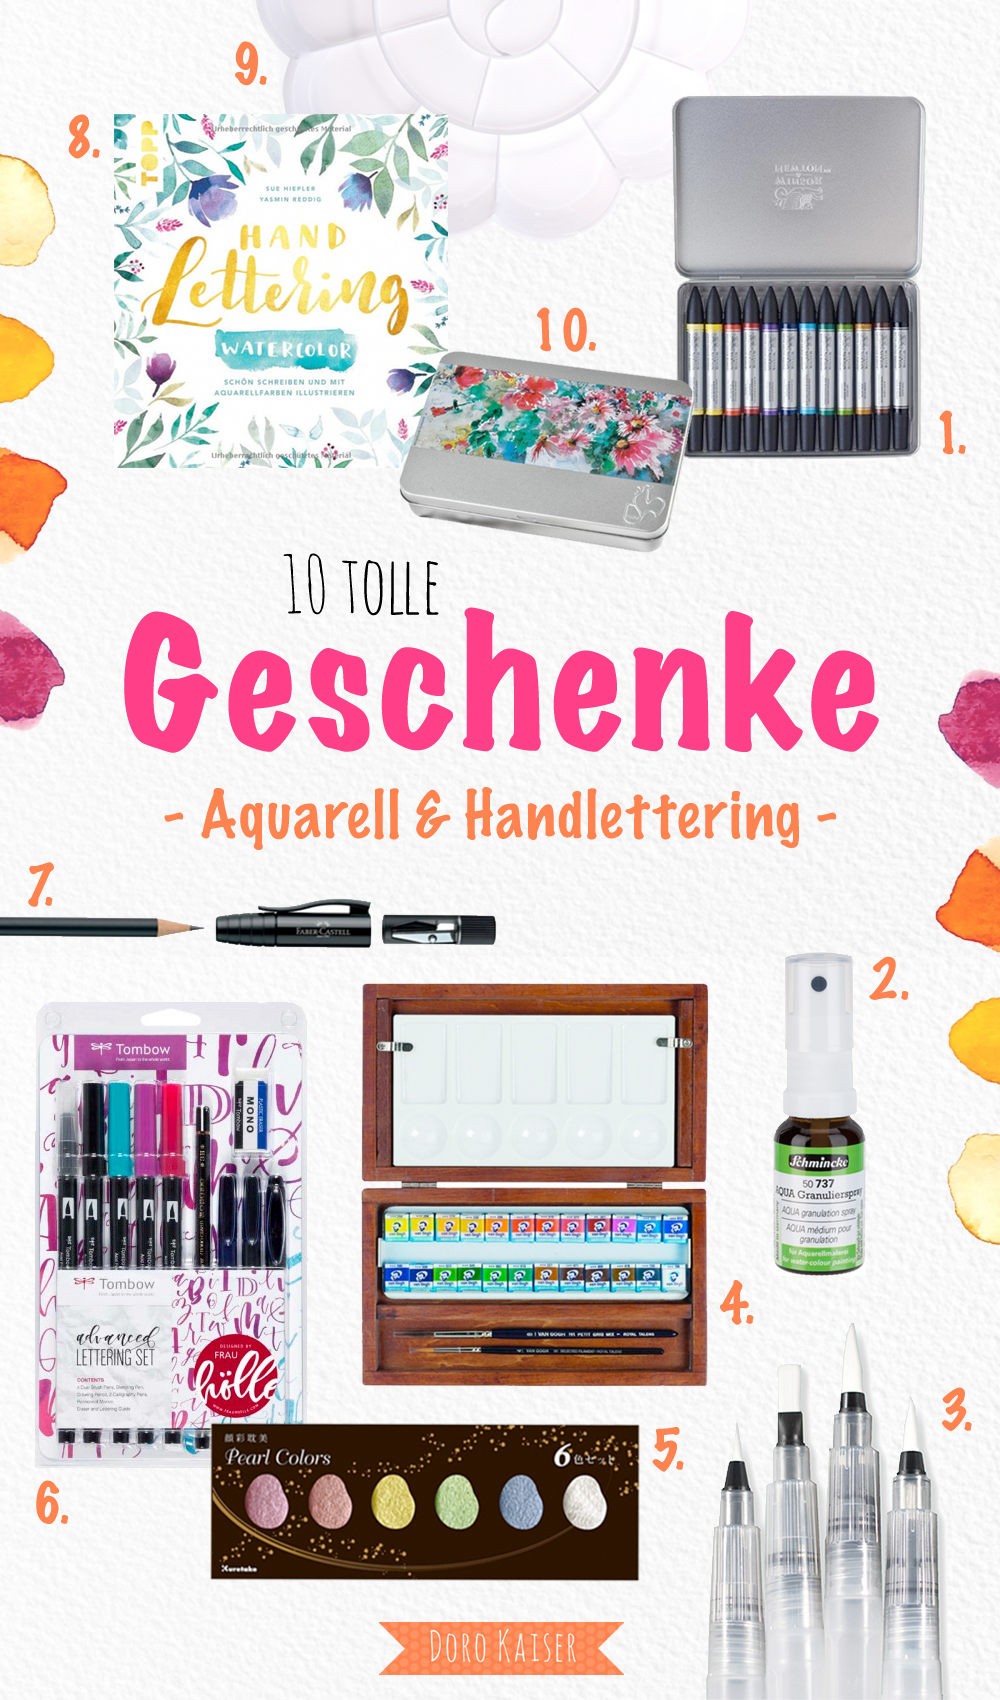 10 tolle Geschenkideen - Geschenke für alle, die Aquarell und Handlettering lieben | www.dorokaiser.online.de